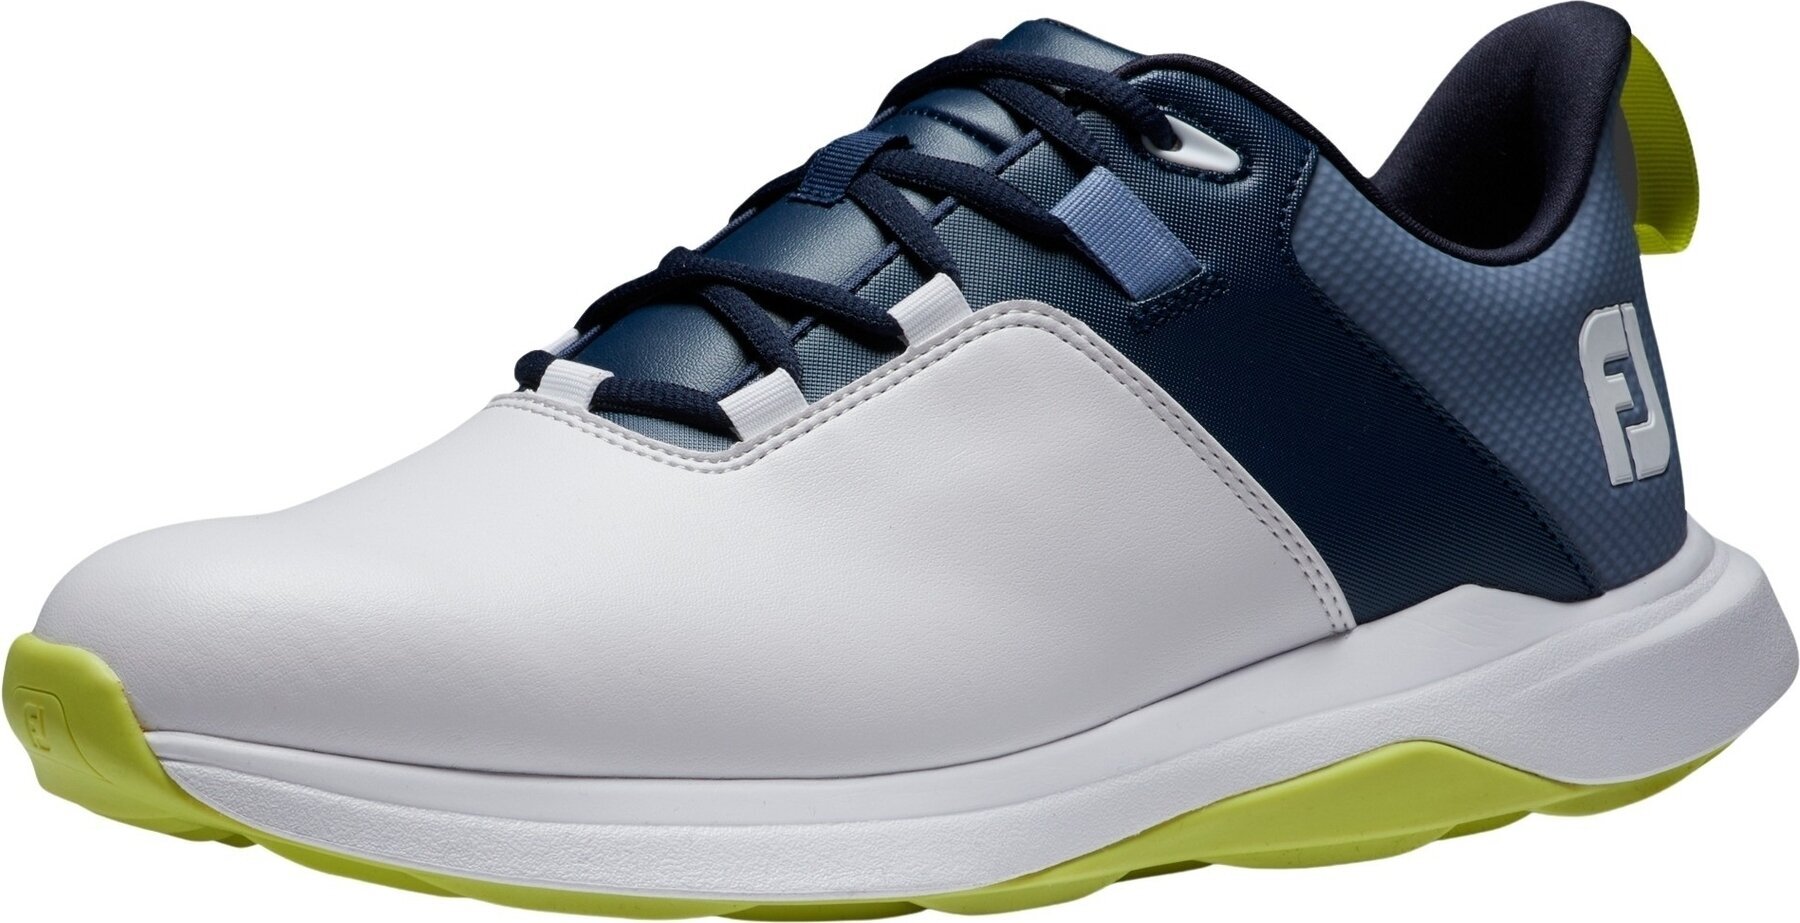 Calzado de golf para hombres Footjoy ProLite Mens Golf Shoes White/Navy/Lime 46 Calzado de golf para hombres